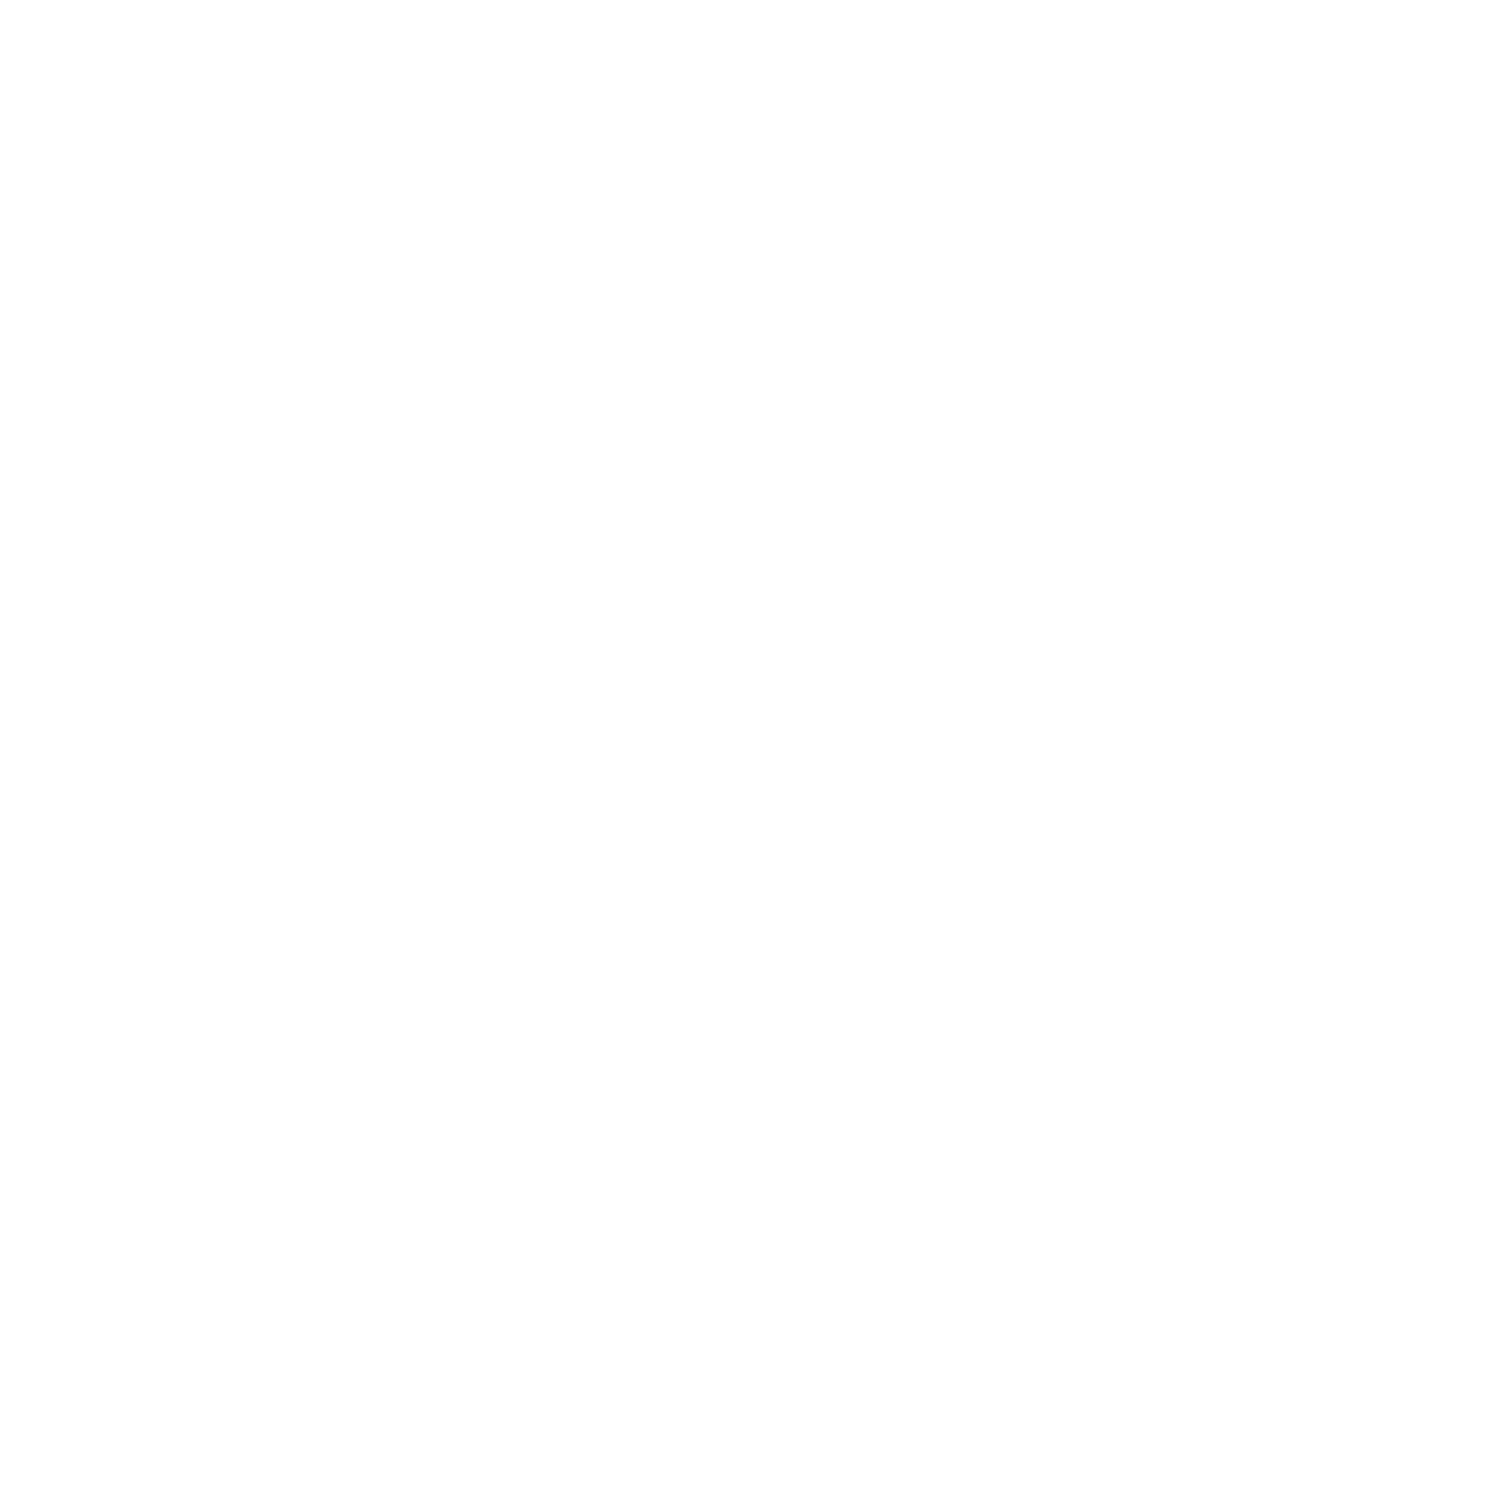 Pitney Bowes logo for dark backgrounds (transparent PNG)